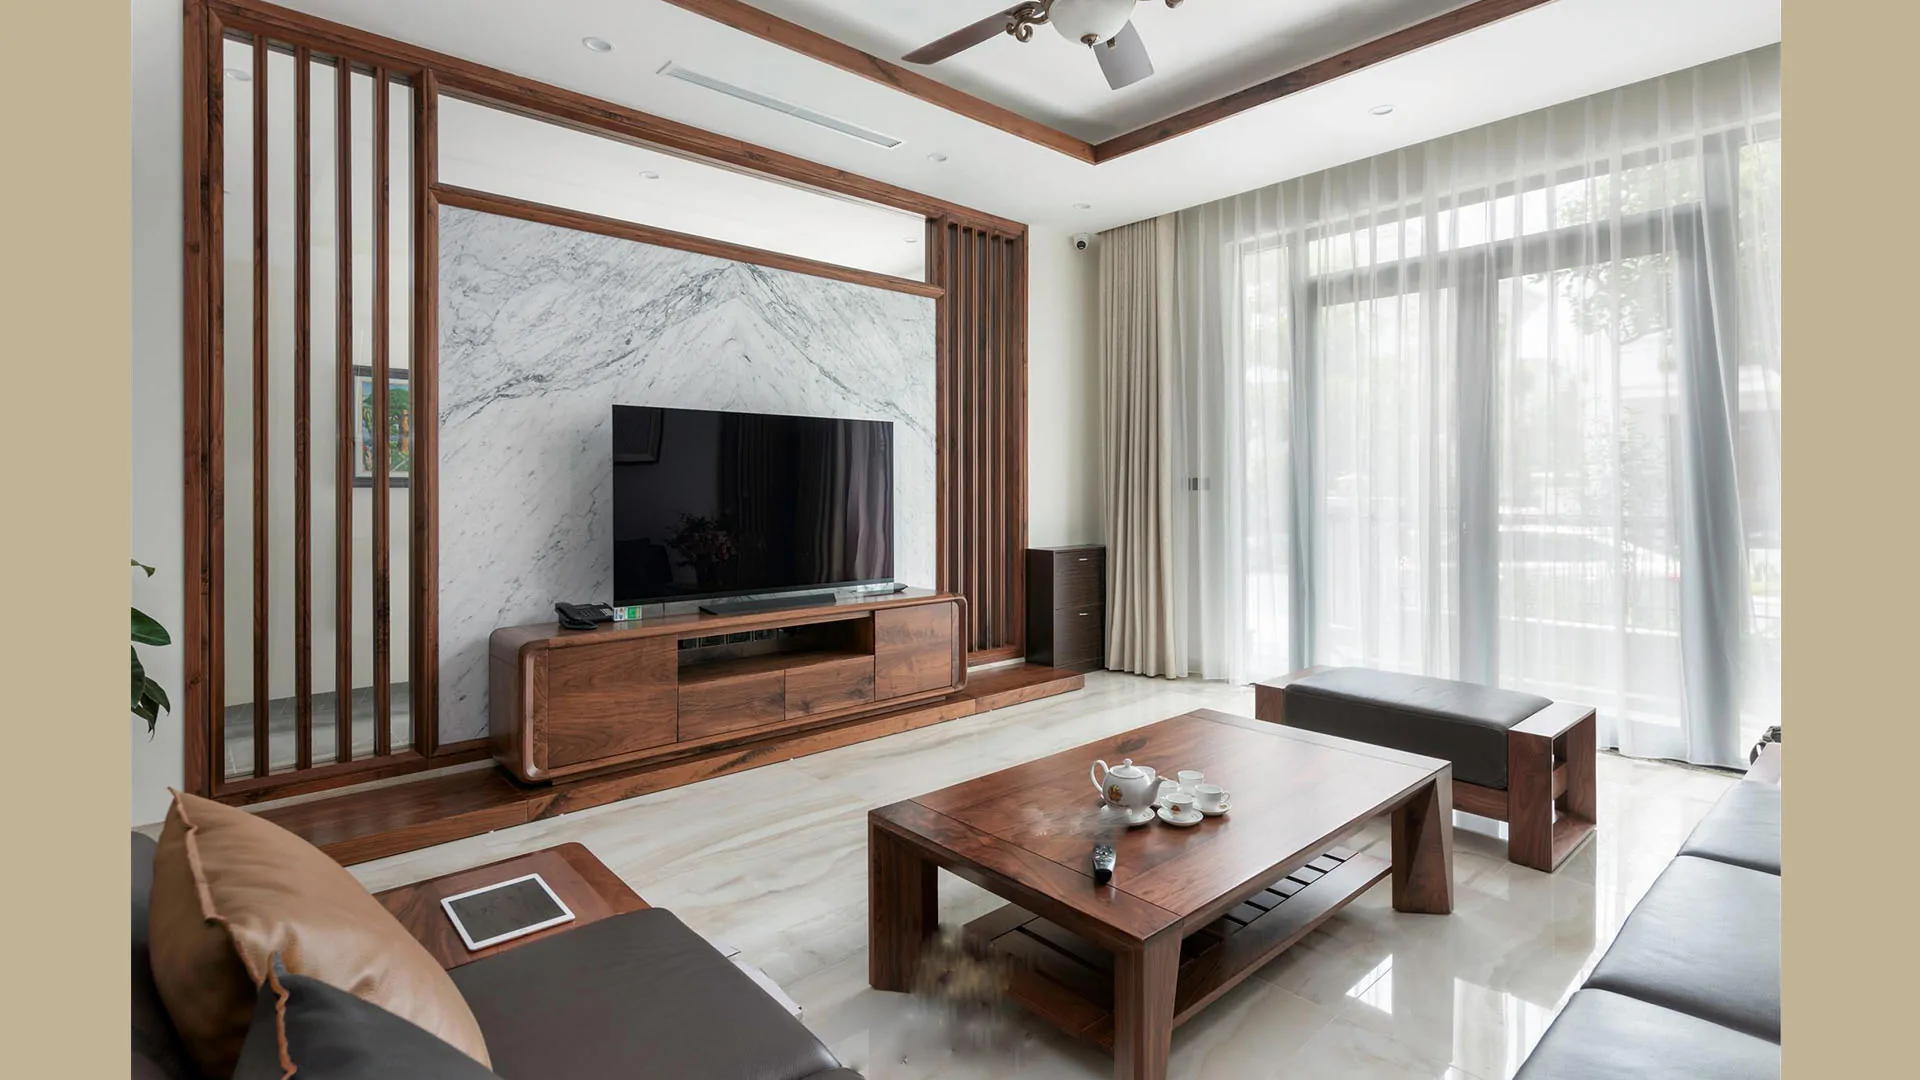 Kệ tivi đơn giản: Với kệ tivi đơn giản, bạn sẽ có một không gian trang trí hiện đại cho phòng khách của mình. Nó được thiết kế rất tiện ích với các đầu trang trang bị sẵn sàng để bạn chăm sóc và quản lý thiết bị. Kệ tivi đơn giản cũng giúp tối ưu hóa không gian phòng khách và tạo nên một sự gọn gàng cho căn nhà của bạn.